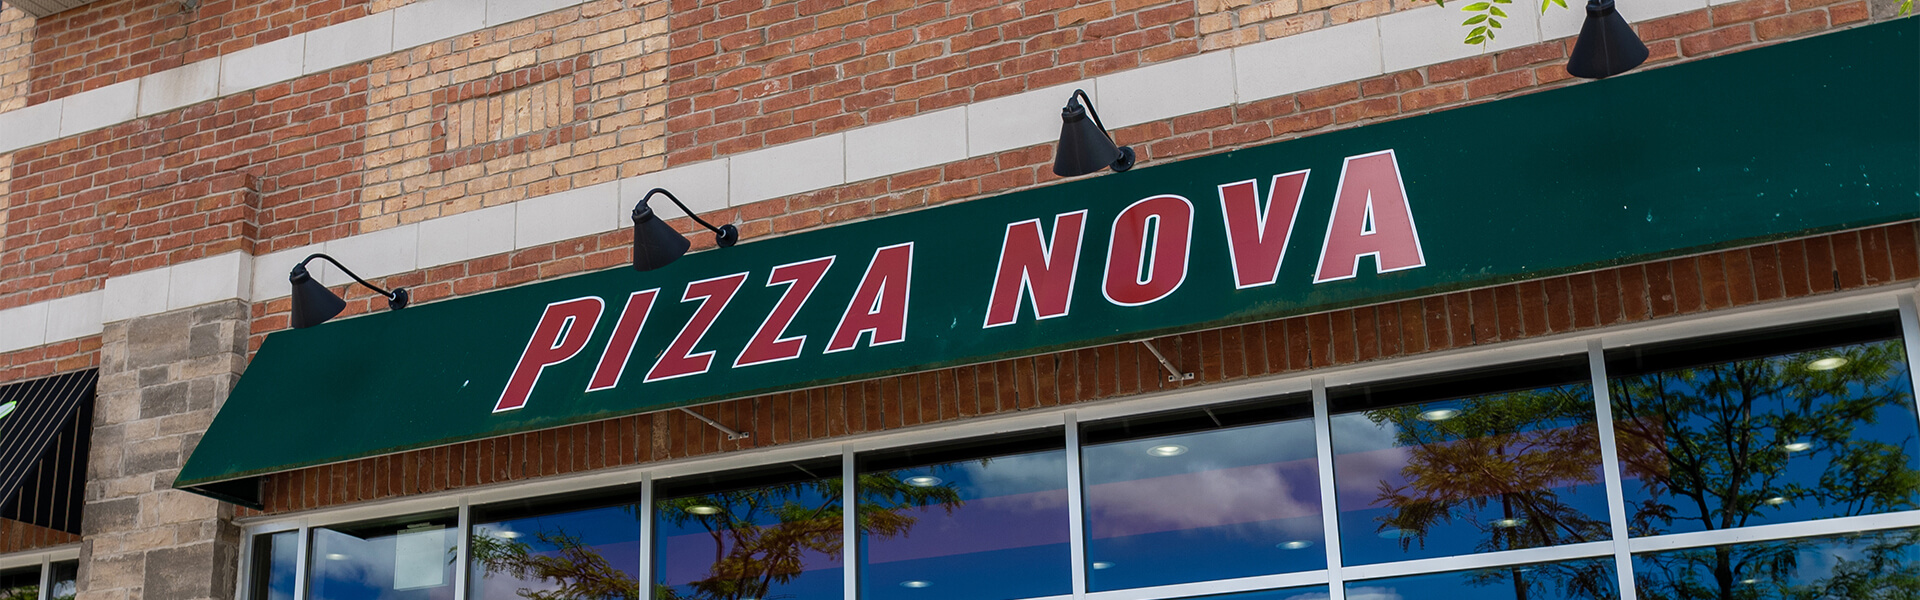 Pizza Nova - Exterior - Banner